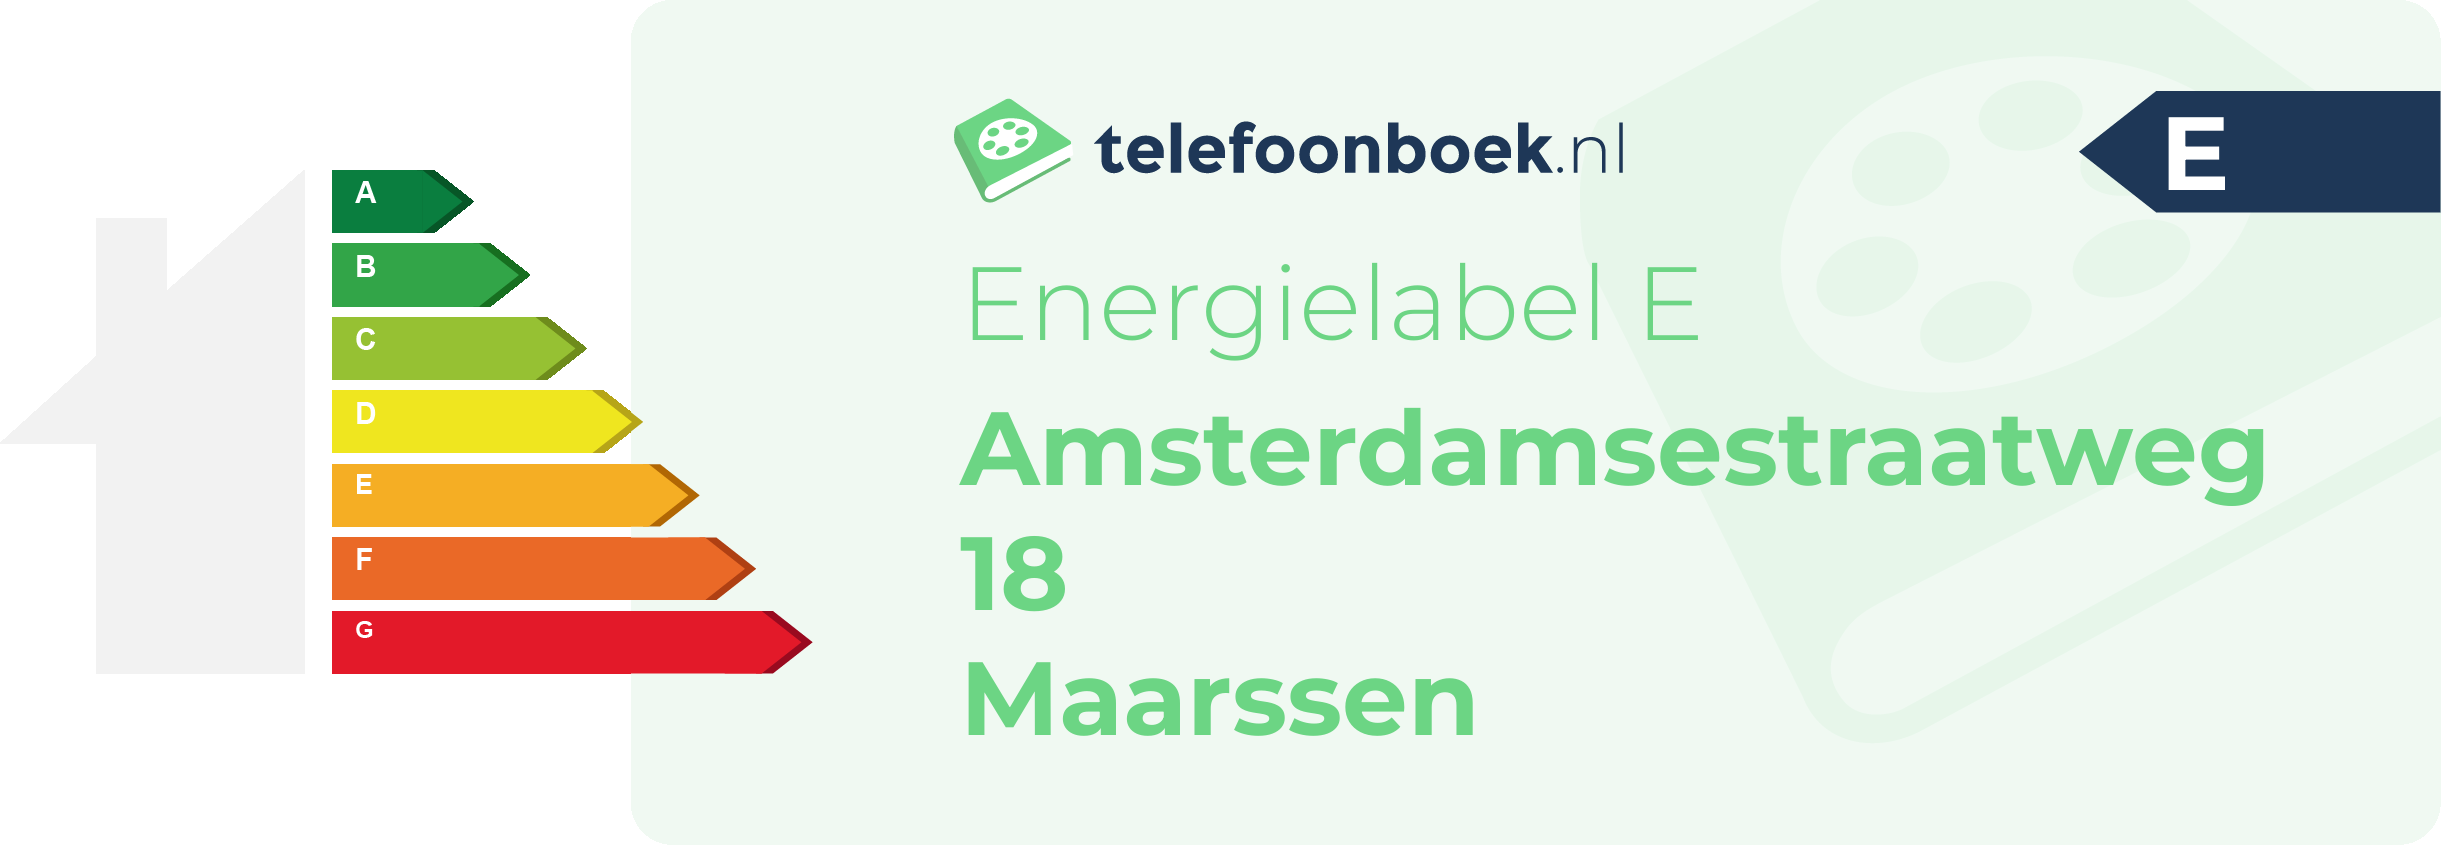 Energielabel Amsterdamsestraatweg 18 Maarssen